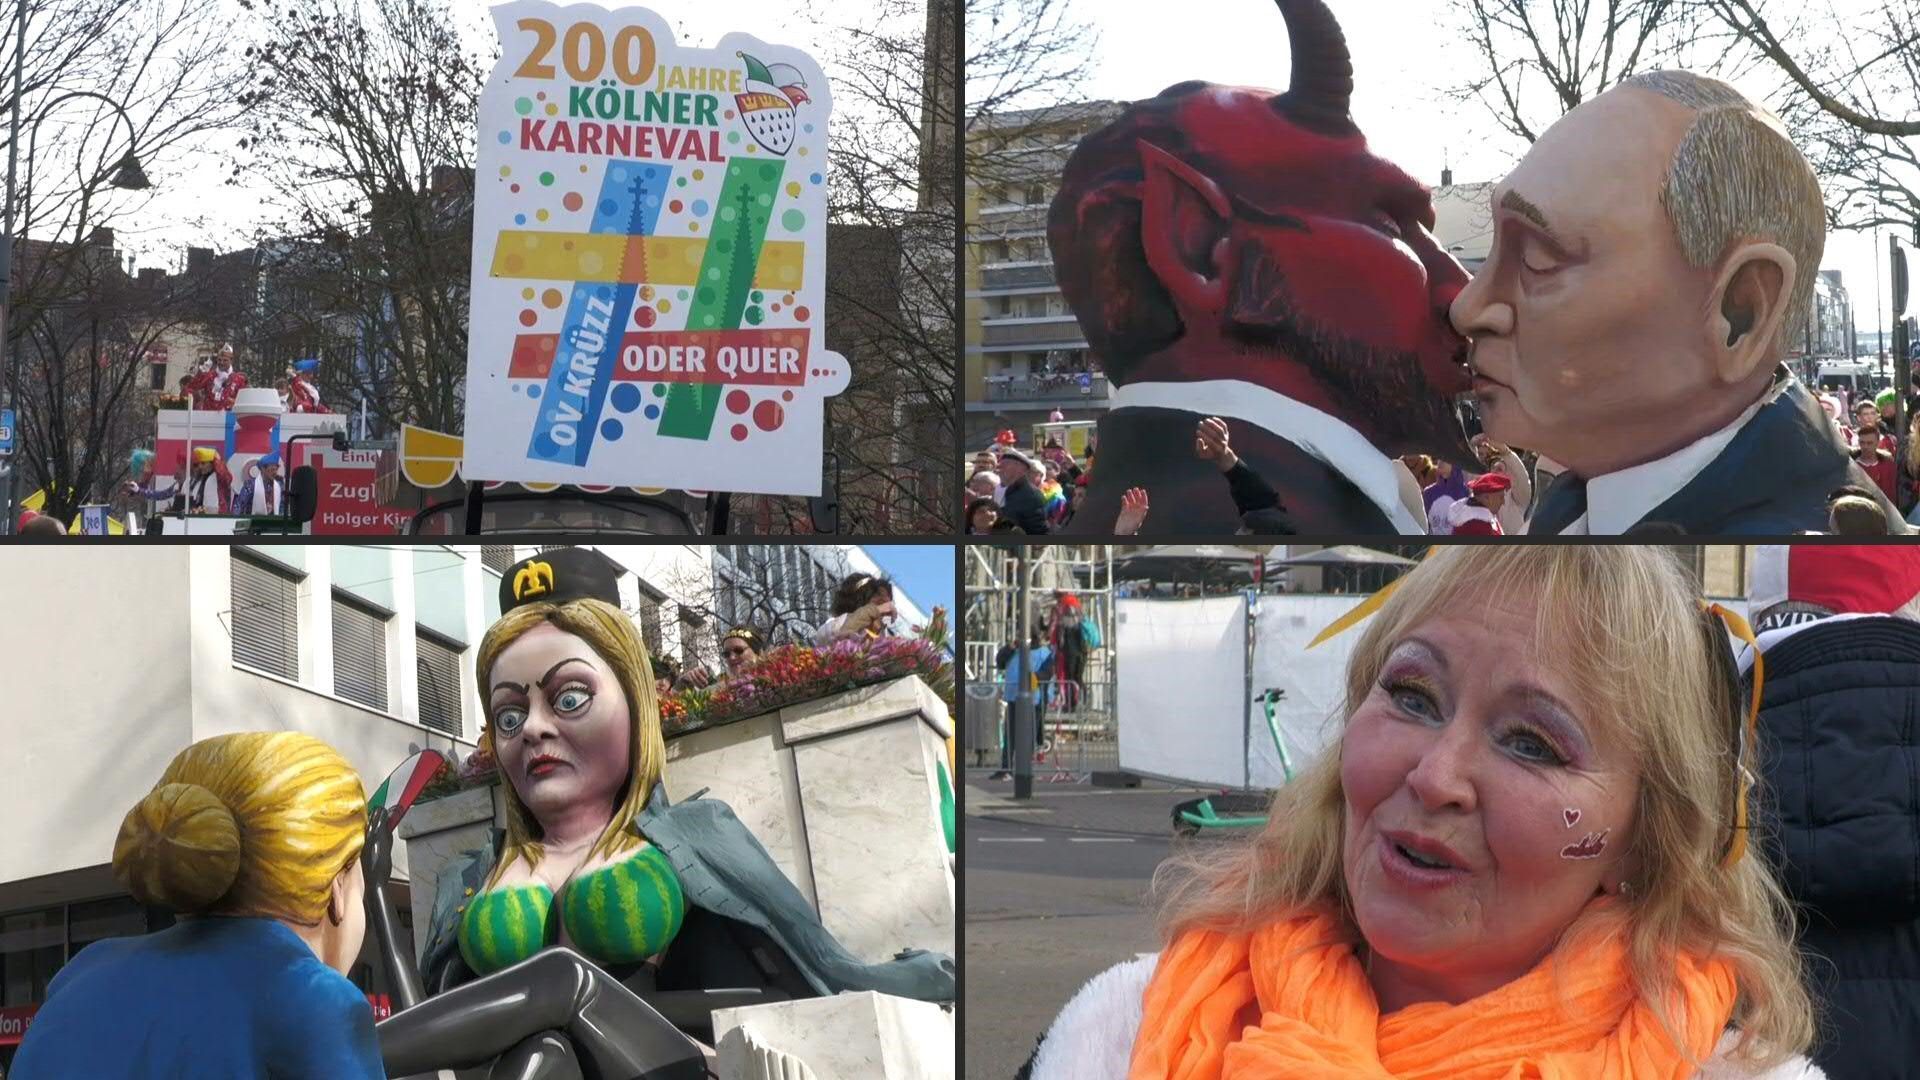 Aniversario del carnaval de Colonia: un estreno y mucha crítica política